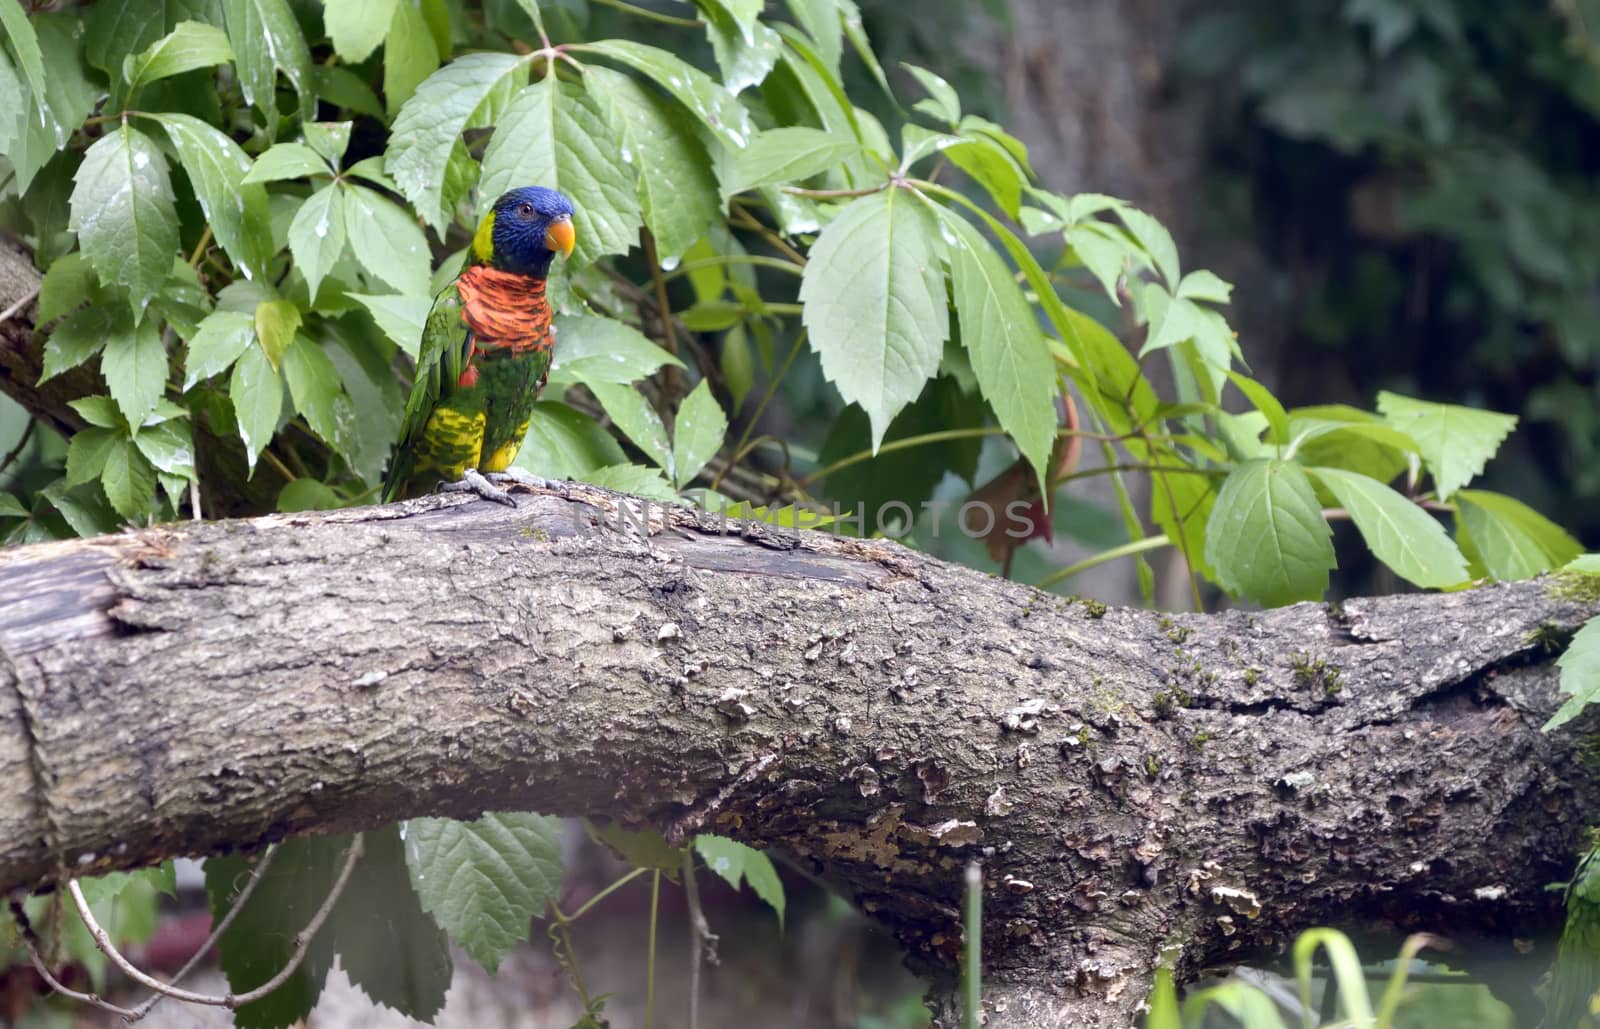 Amazon Parrot (Amazona aestiva) on tree brunch